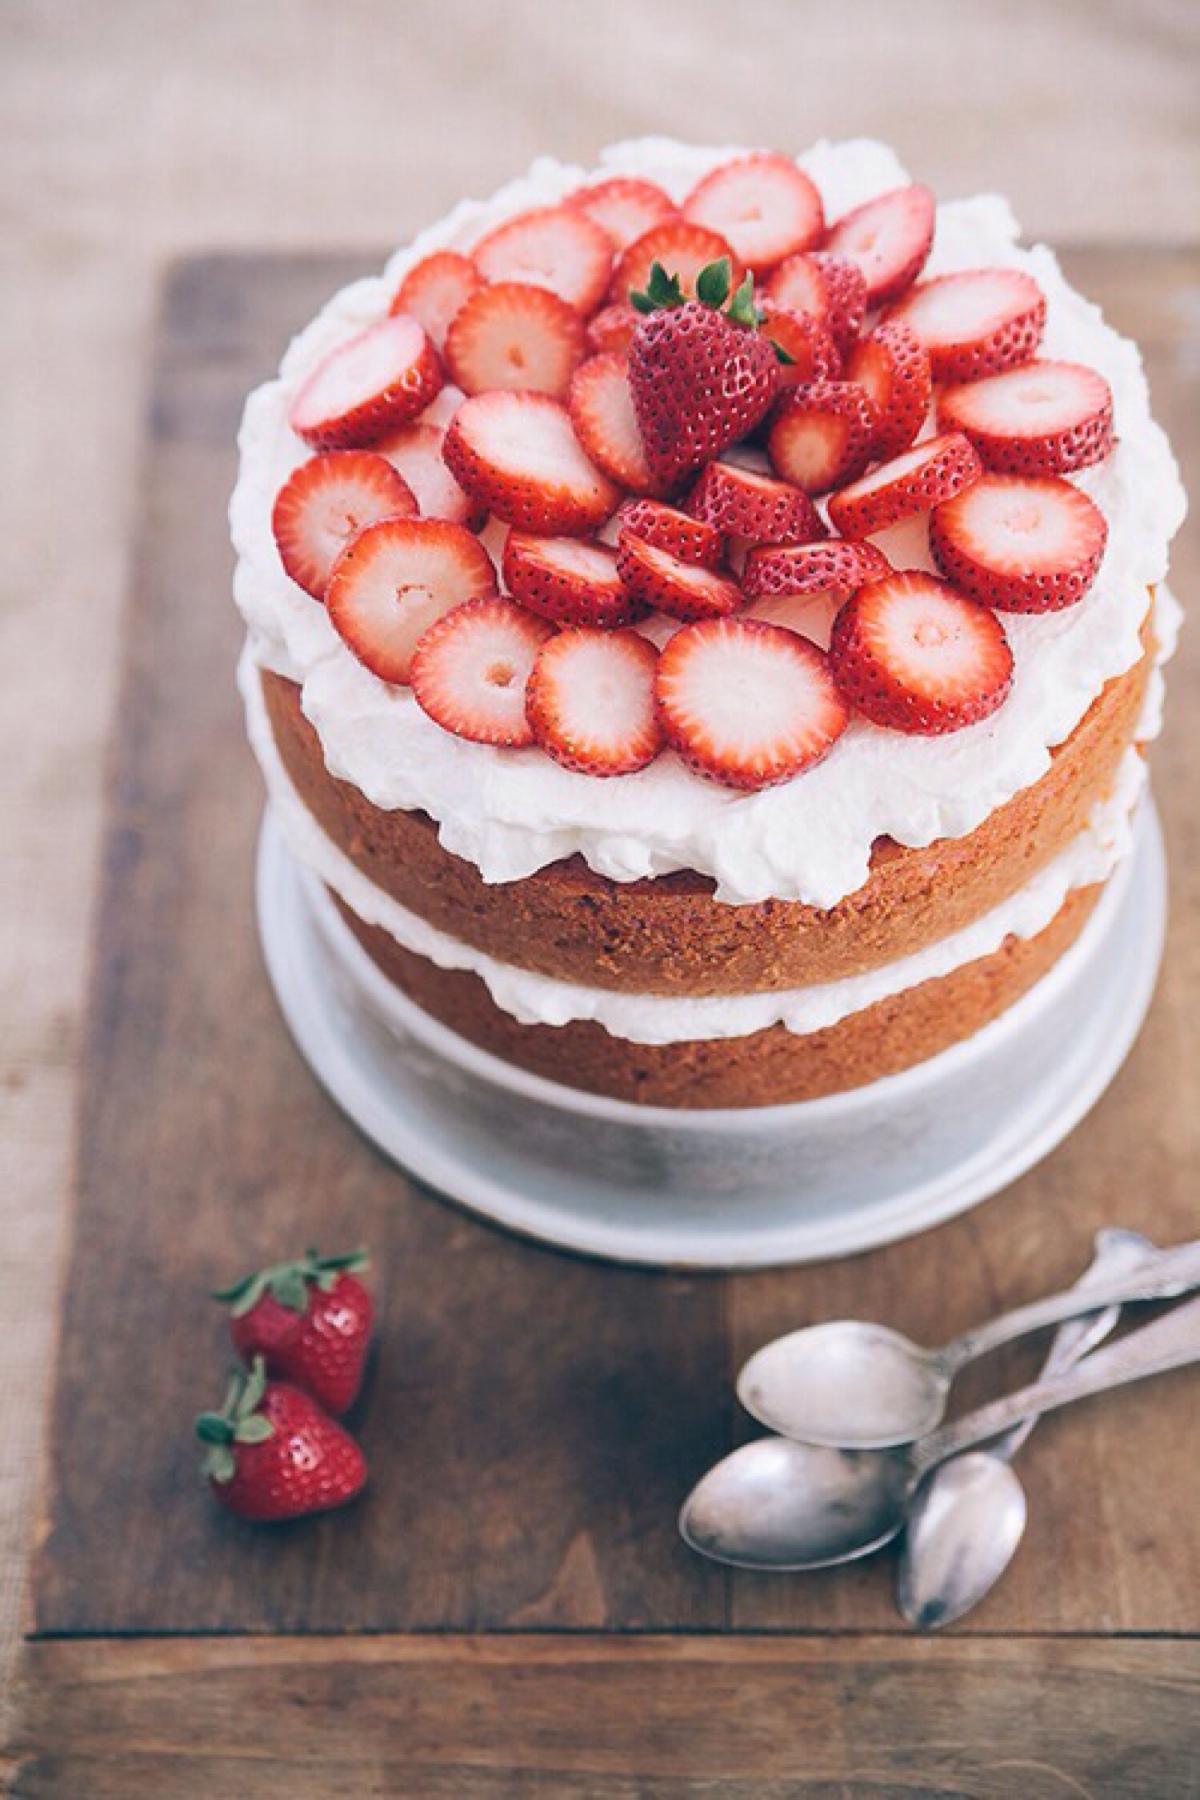 纯草莓奶油夹心蛋糕,其实碰到夹心蛋糕已经是好几次的事了,看多了也不